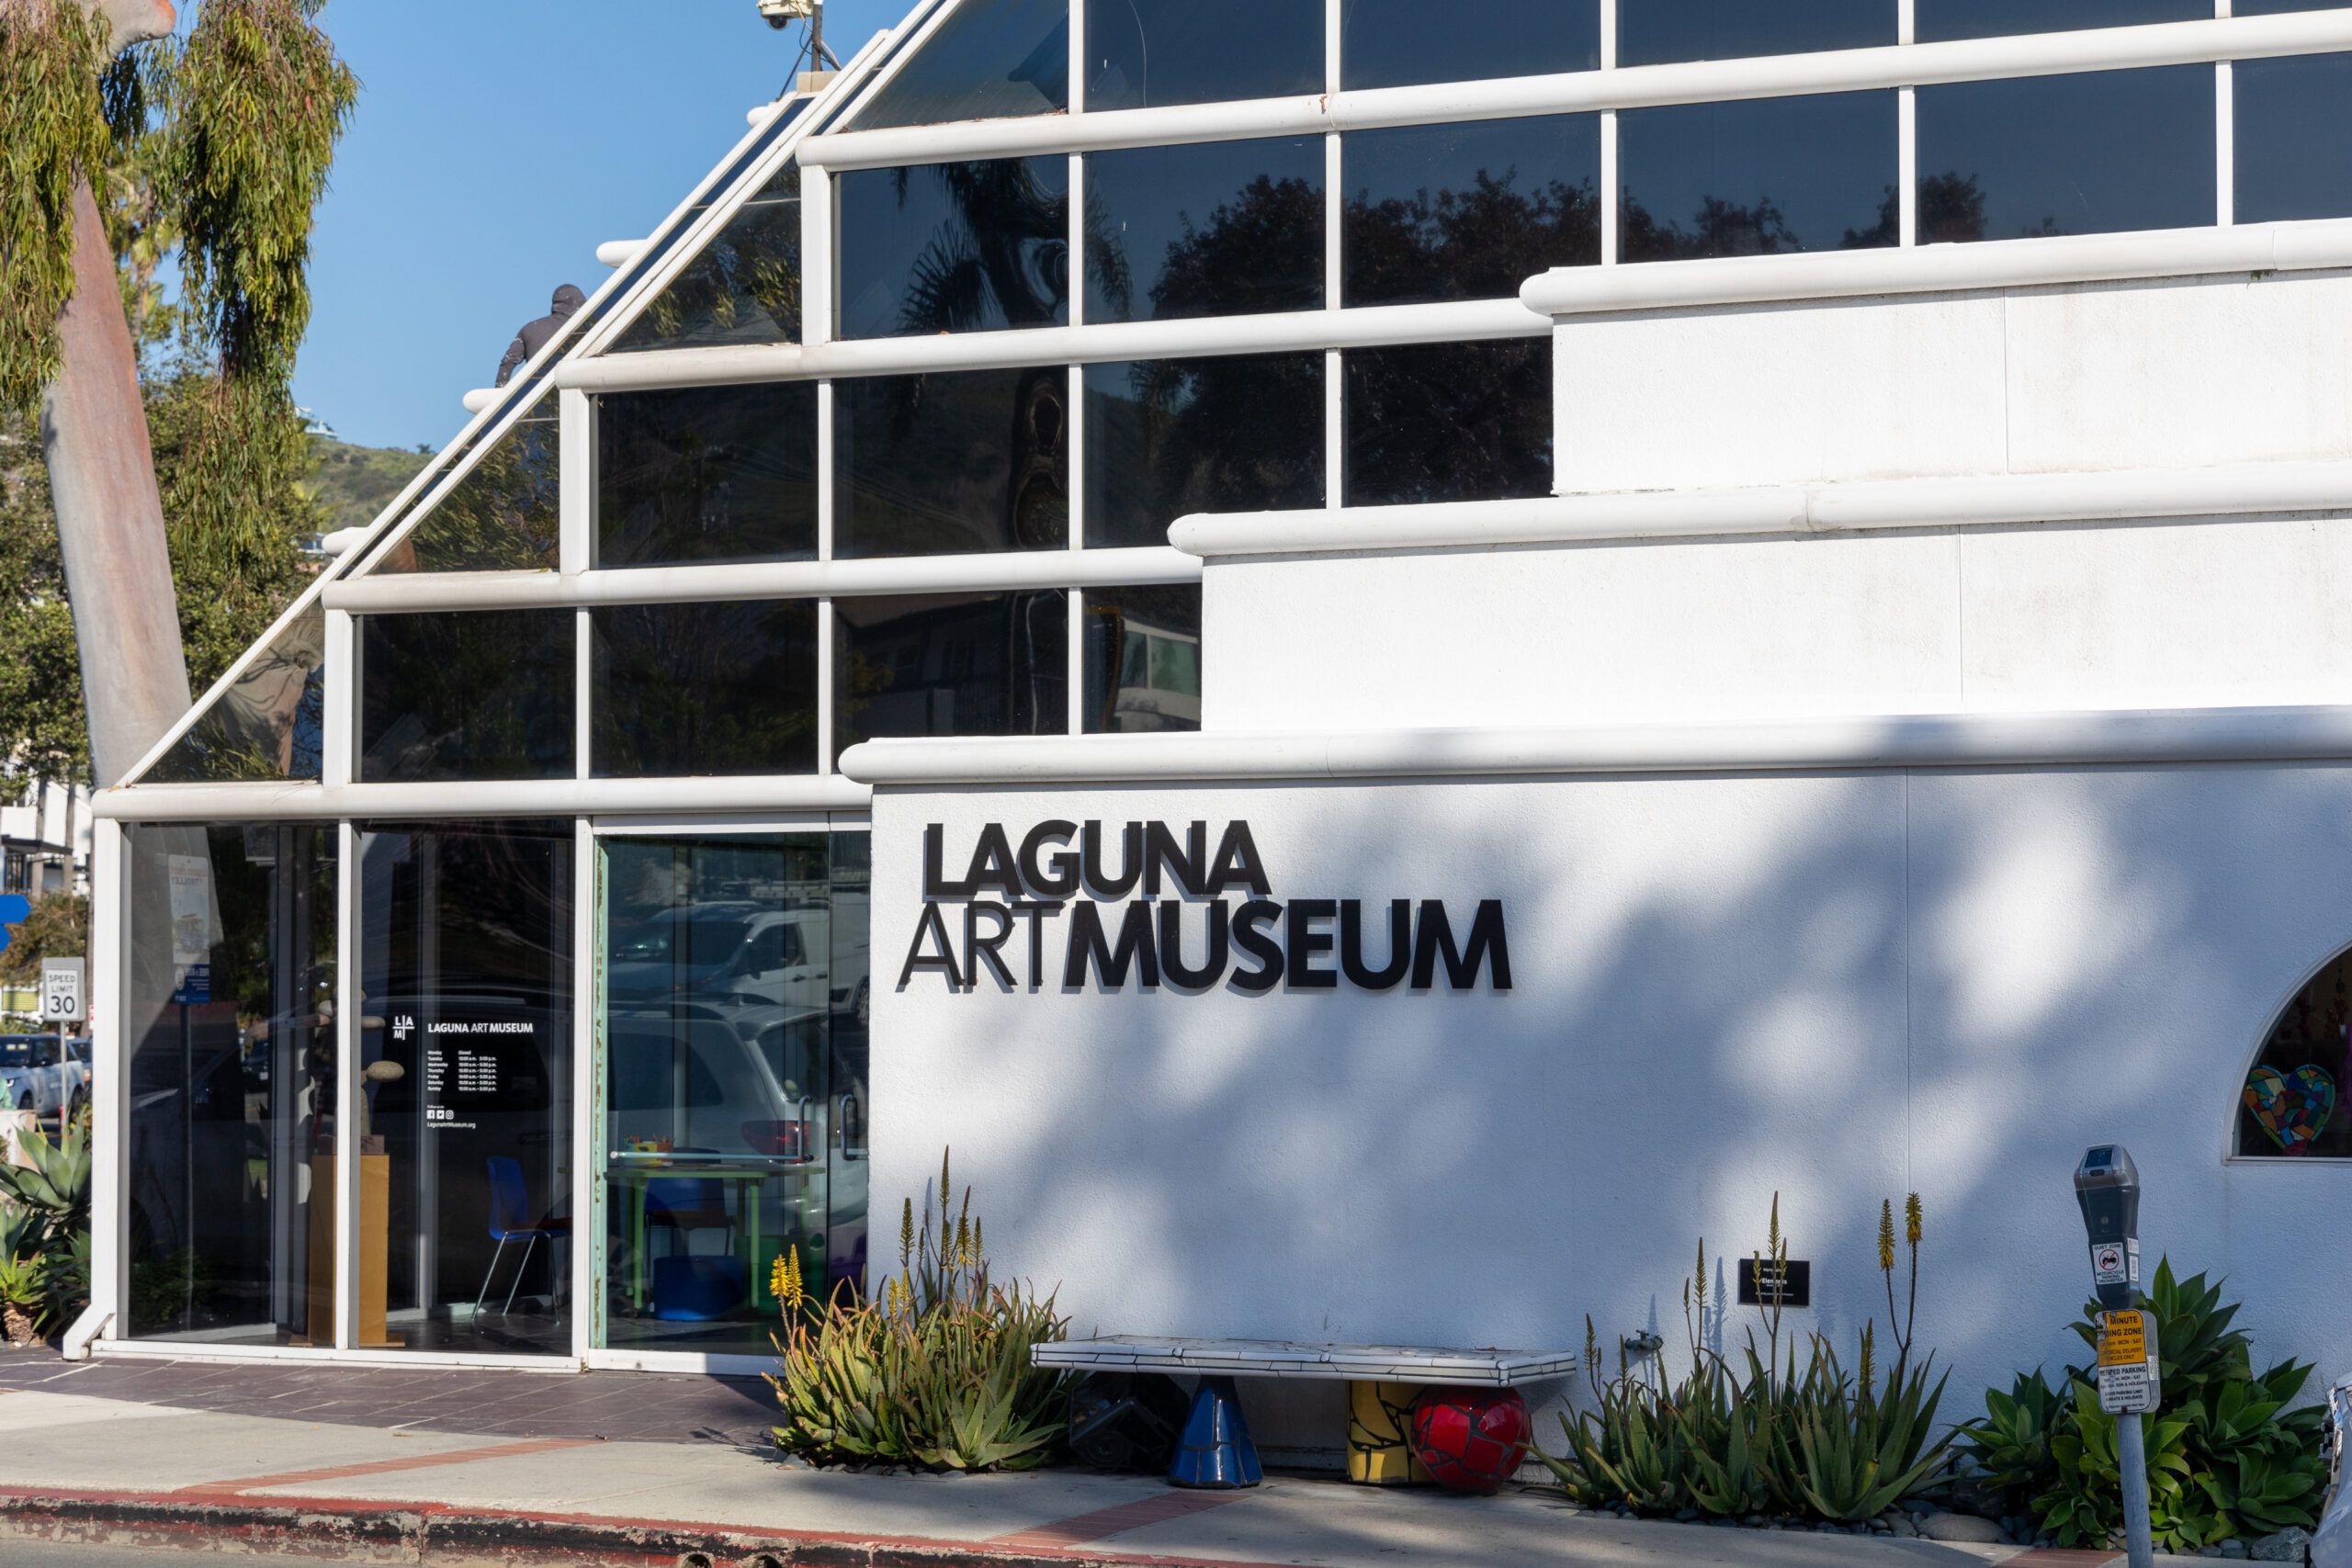 Explore the Laguna Art Museum